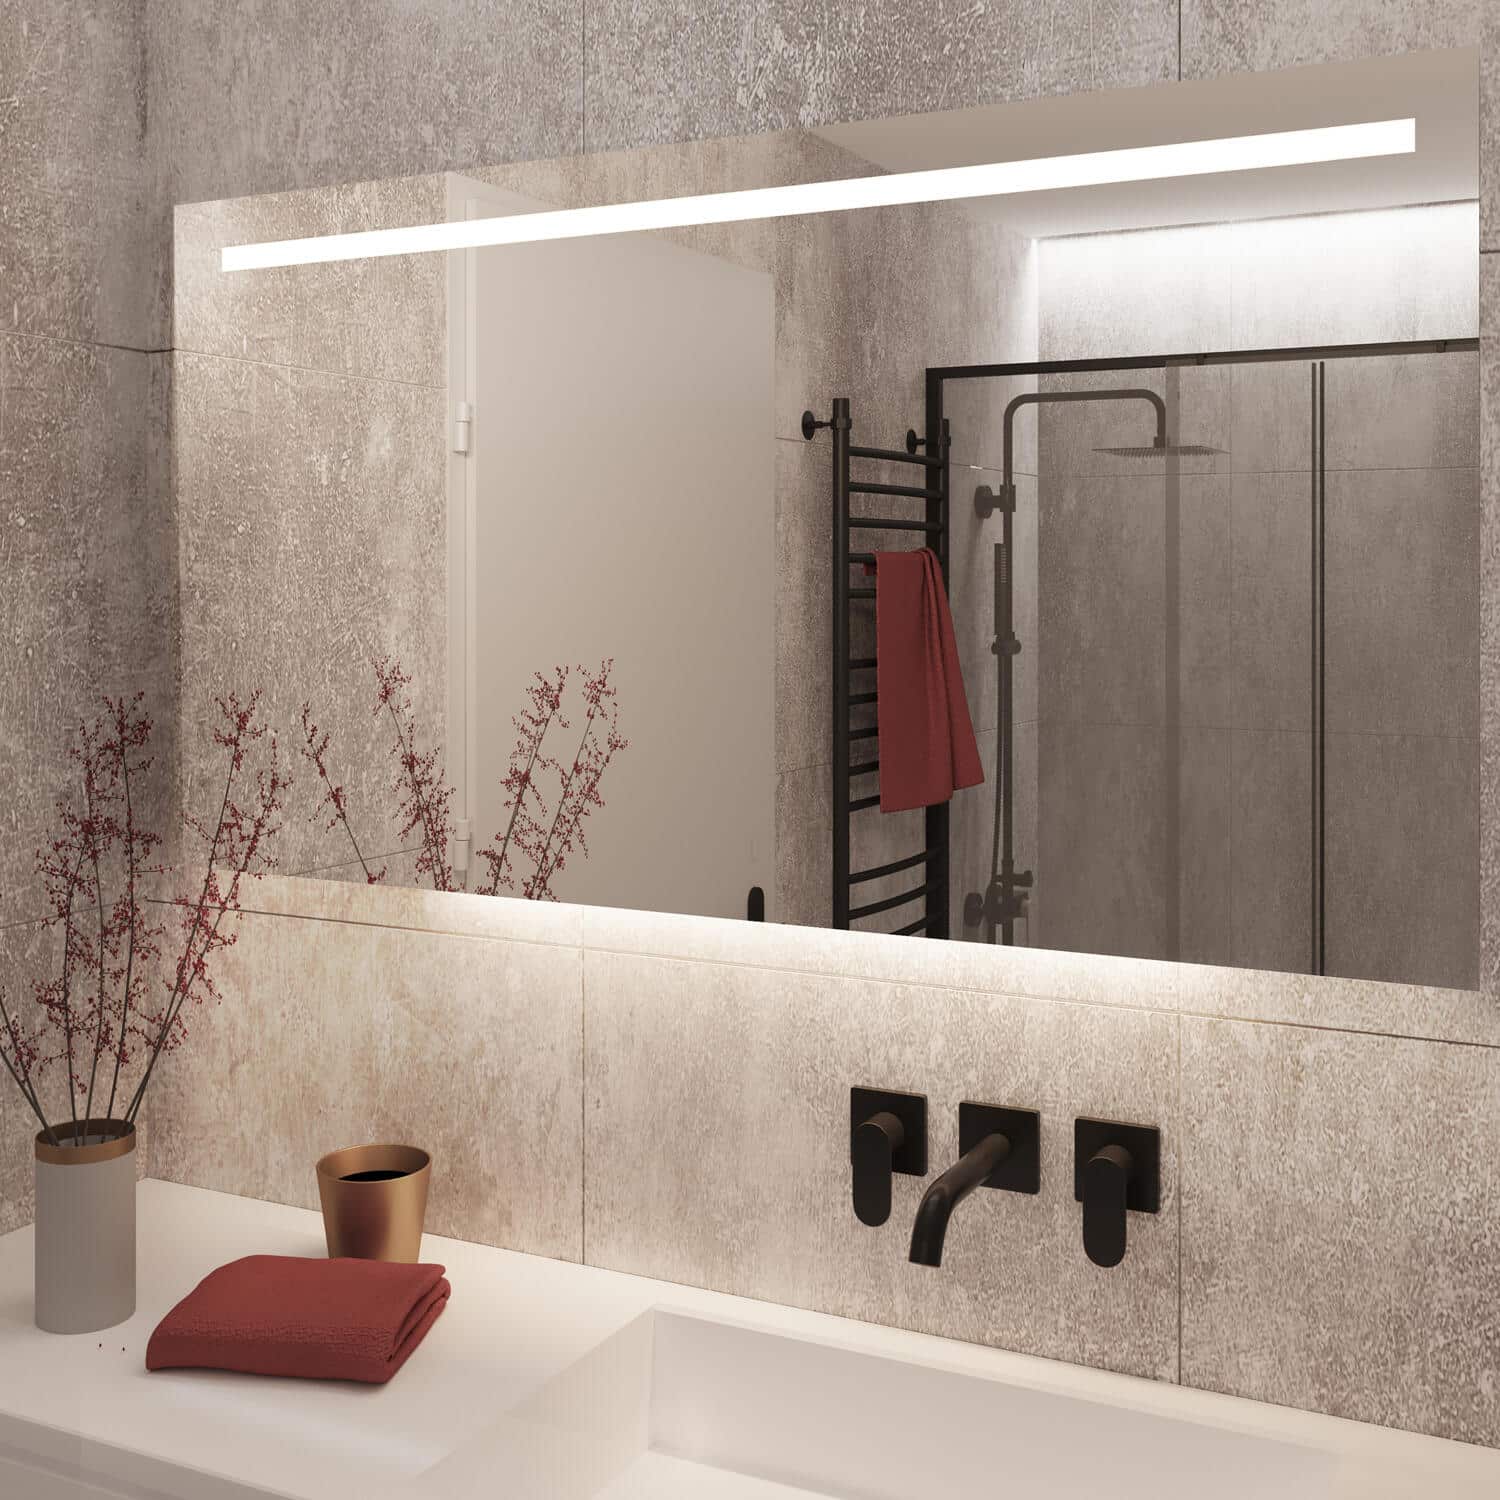 Deze badkamer spiegel is naast verlichting ook voorzien van spiegelverwarming, handig!